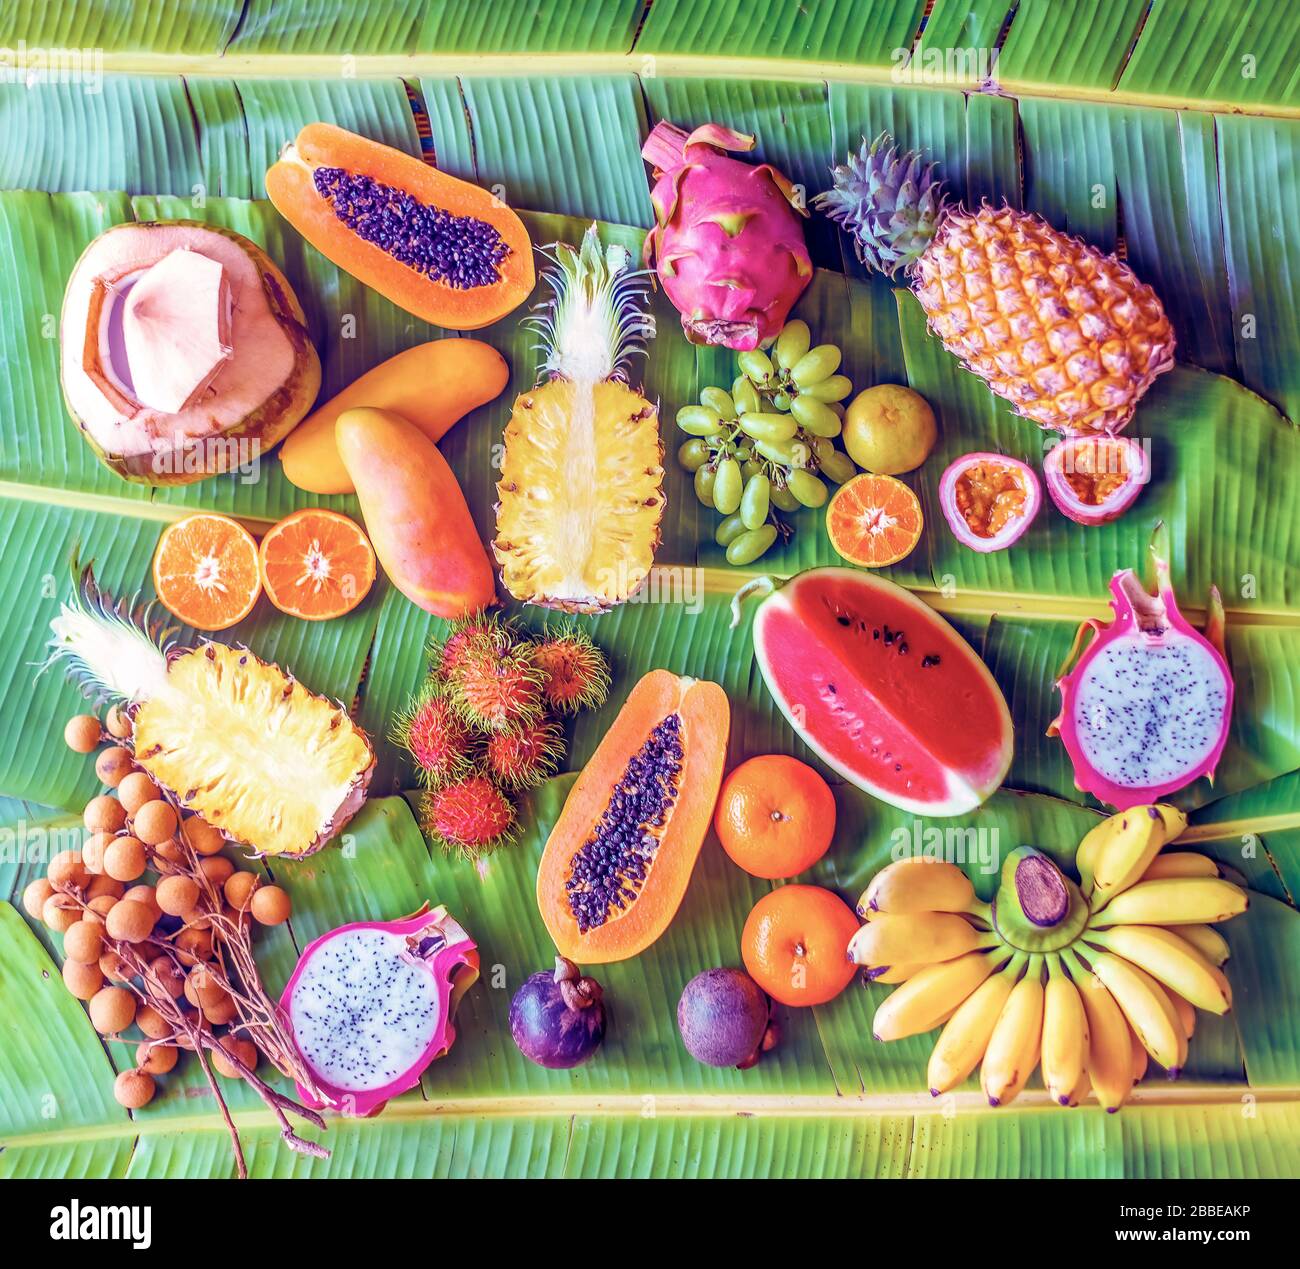 Fruits exotiques sur feuilles de bananes fond - papaye, mangue, ananas, banane, carambola, fruits de dragon, citron, orange, pastèque, noix de coco, ramboutan, Banque D'Images